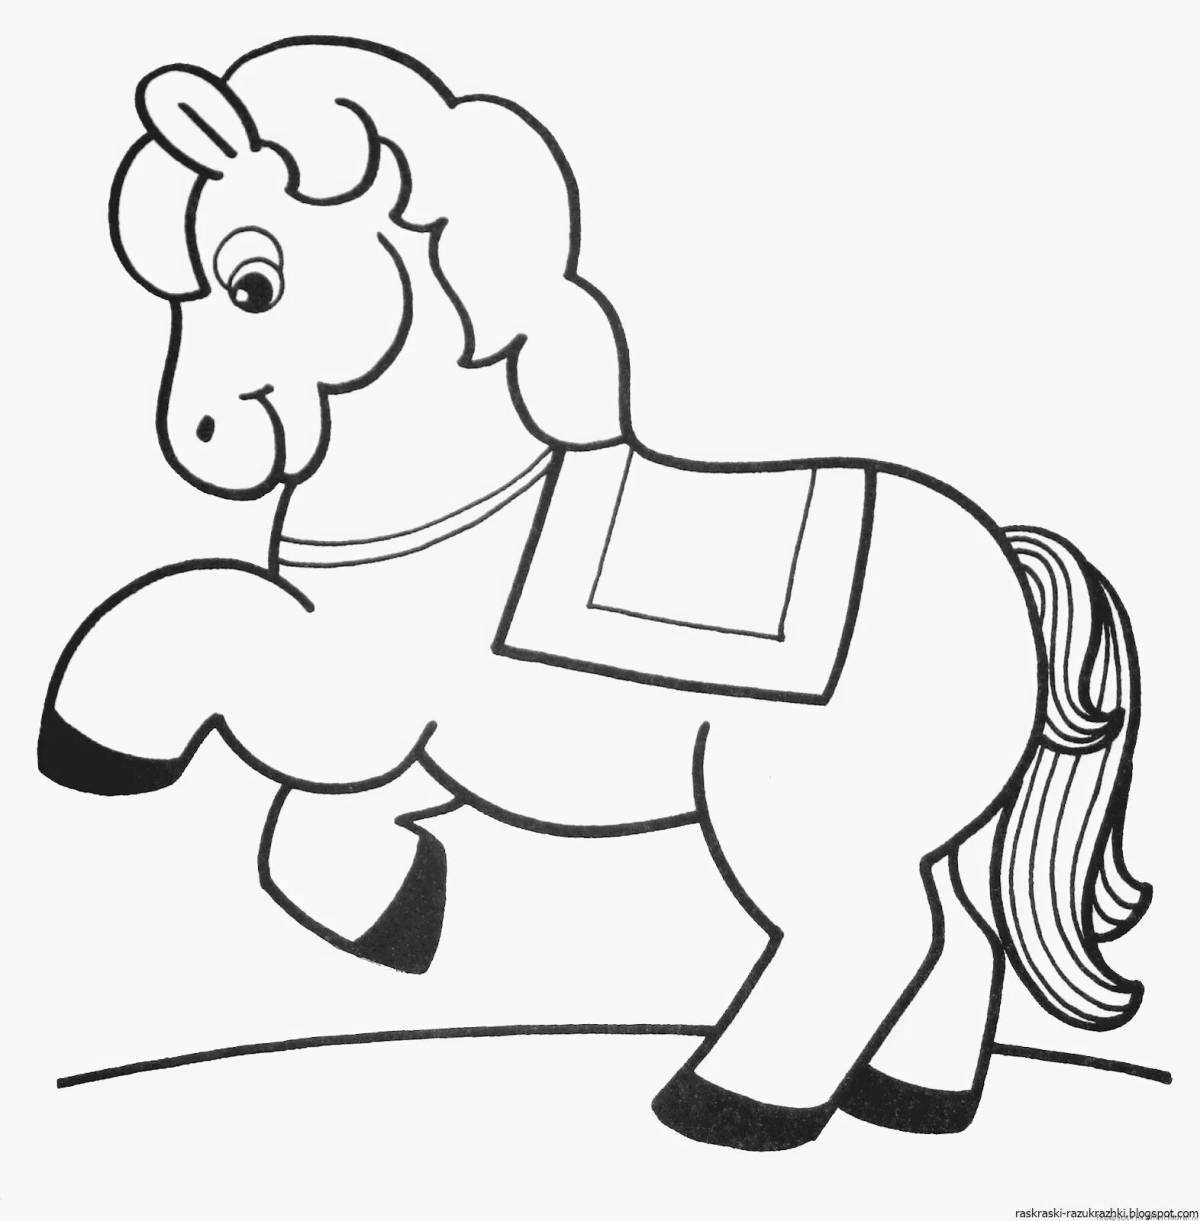 Раскраска «радостная лошадка» для детей 2-3 лет